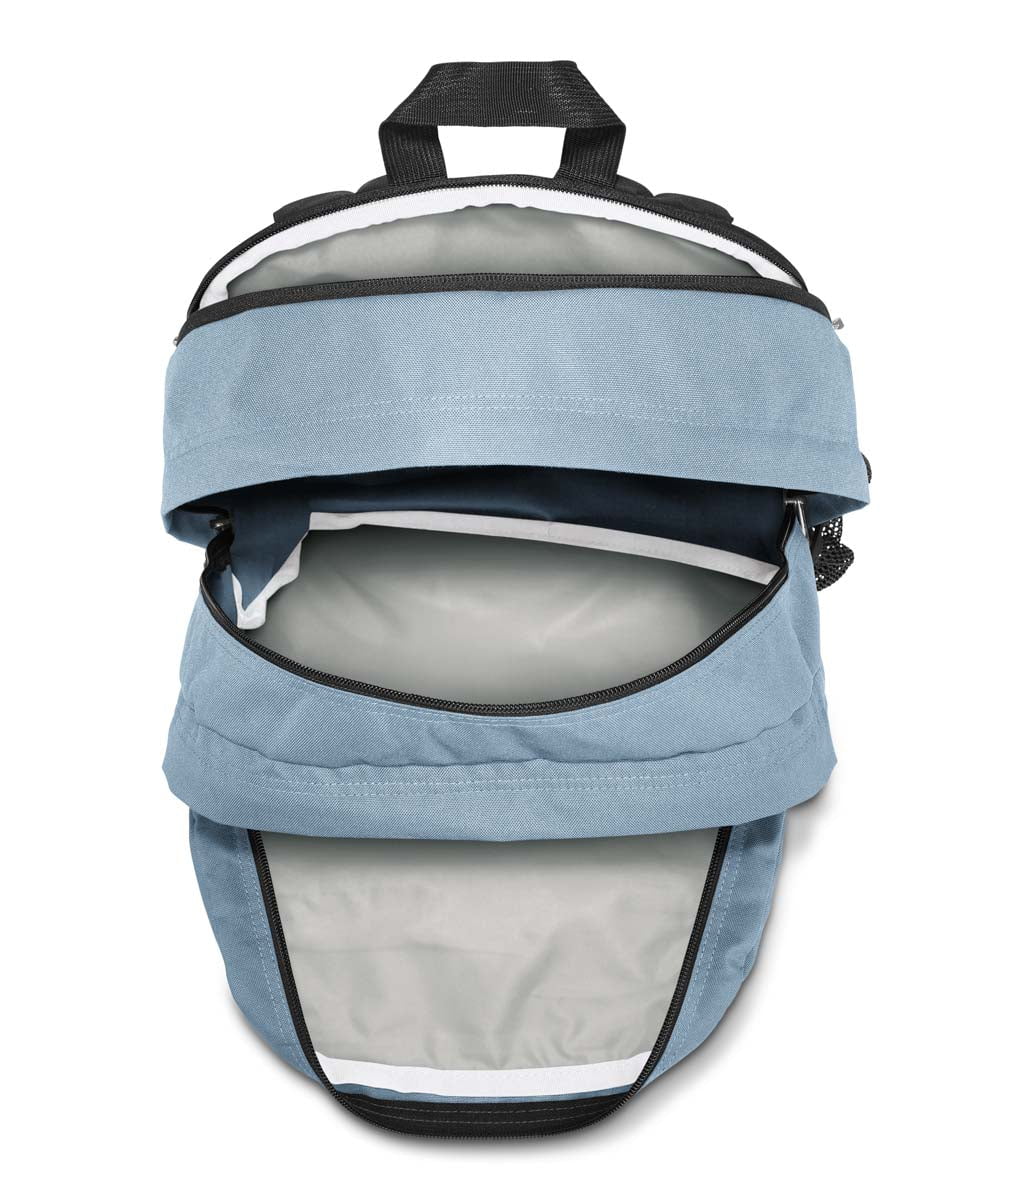 JanSport Big Student Backpack - Blue Dusk